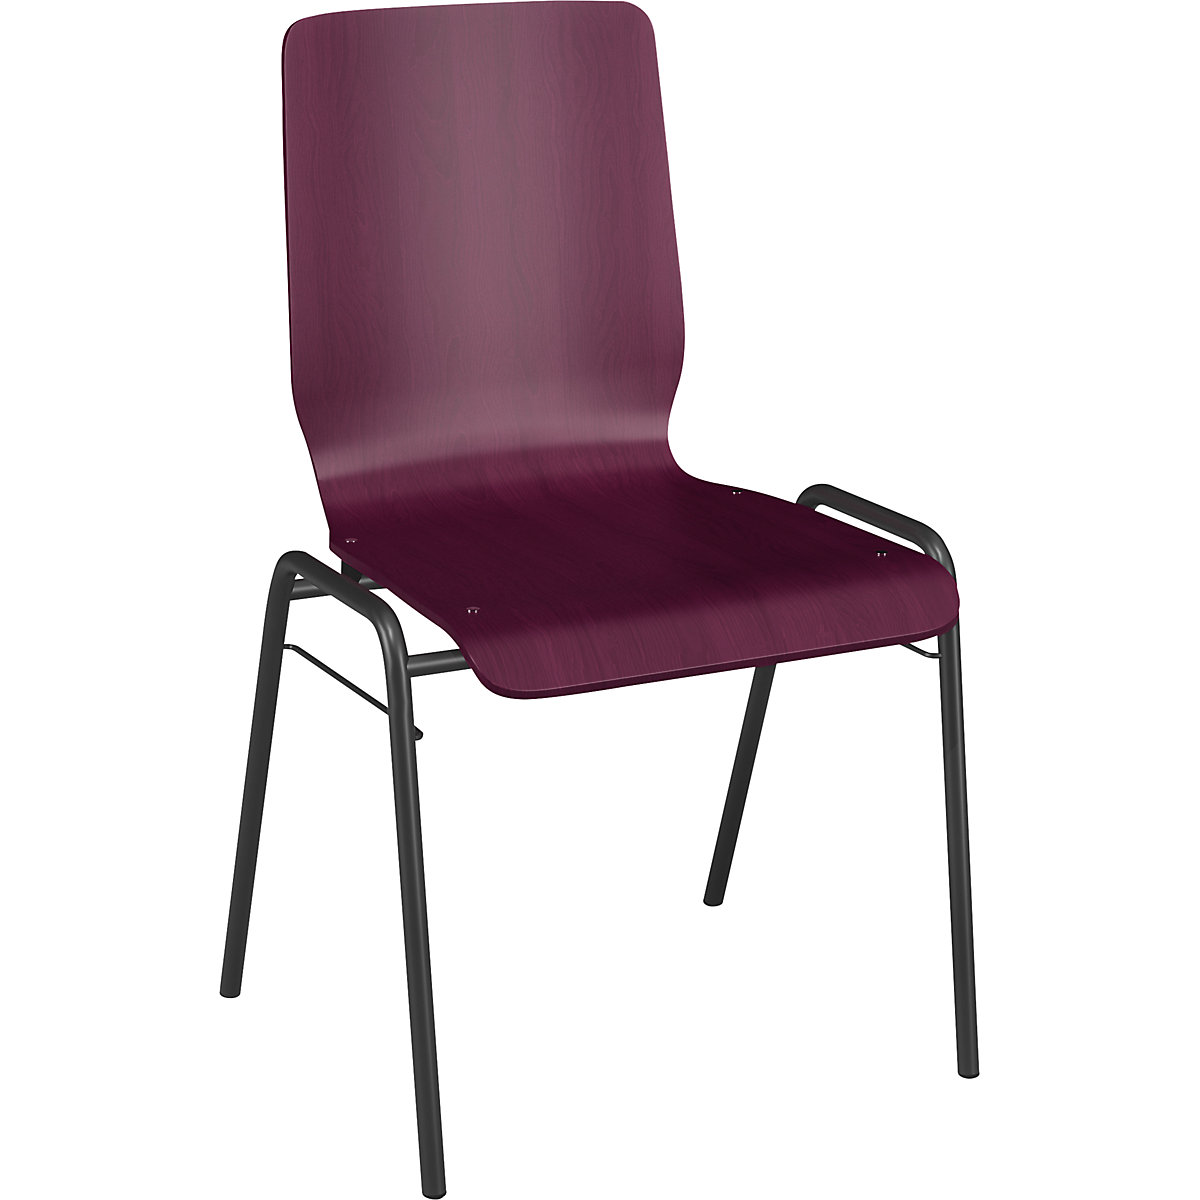 Drevená škrupinová stolička NUKI, podstavec s povrchovou úpravou, OJ 4 ks, drevo bordová-4